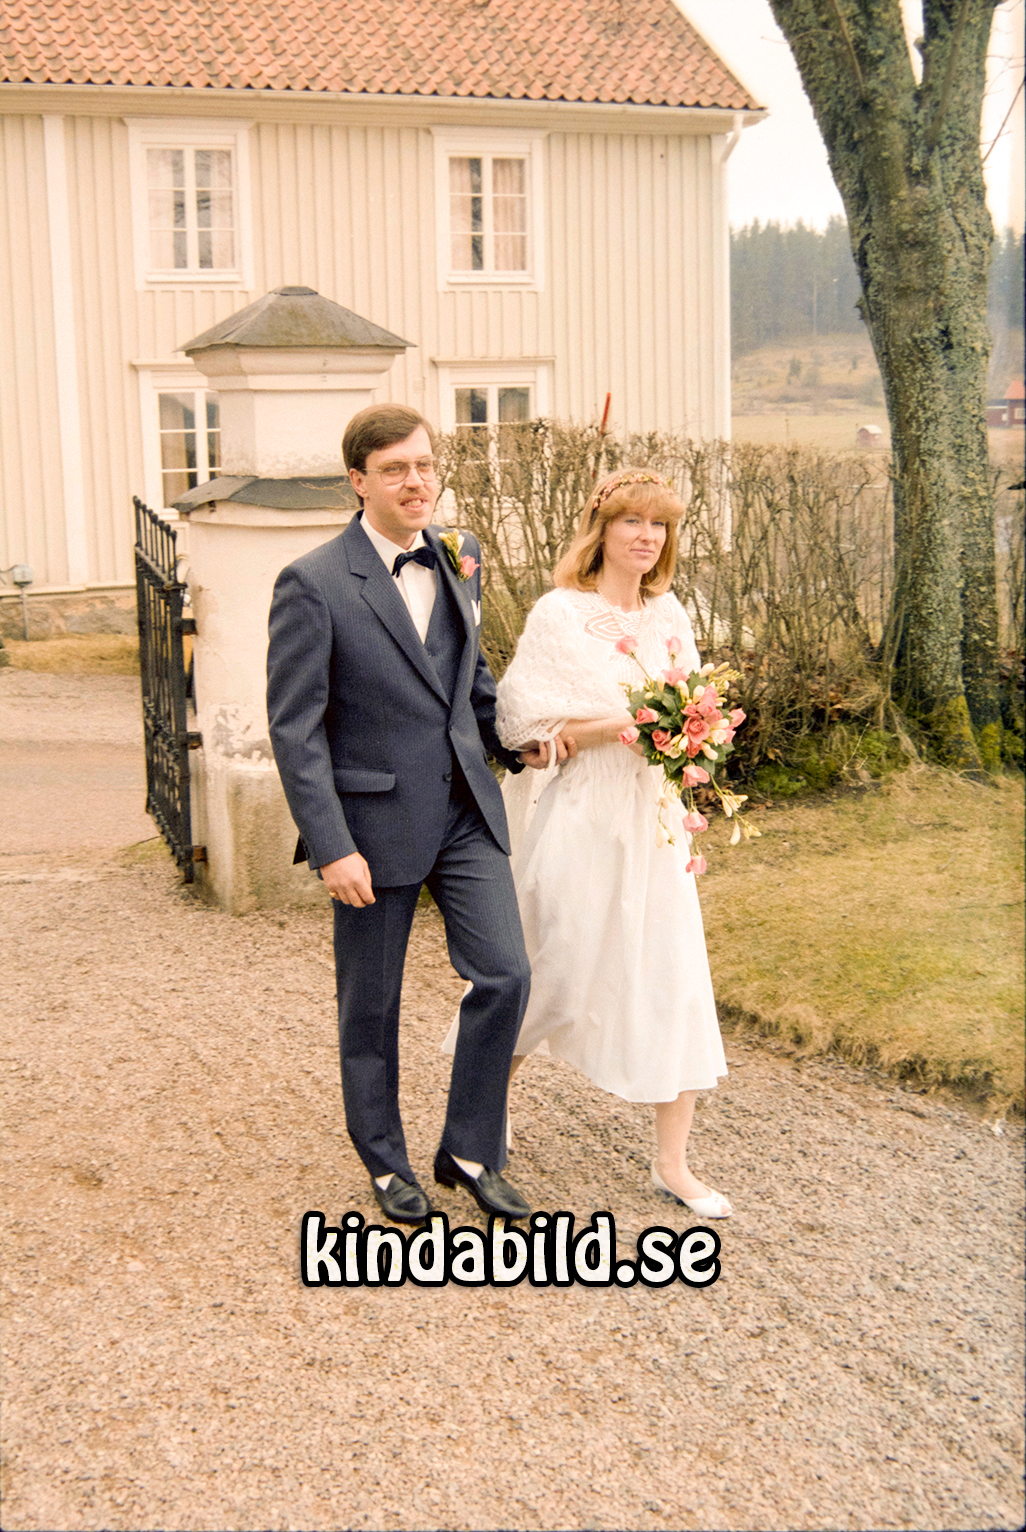 Krister Karlsson Värgårdsplan 2 Kisa
raja
Bröllop Tidersrum Kyrka

Nyckelord: Karlsson Kisa